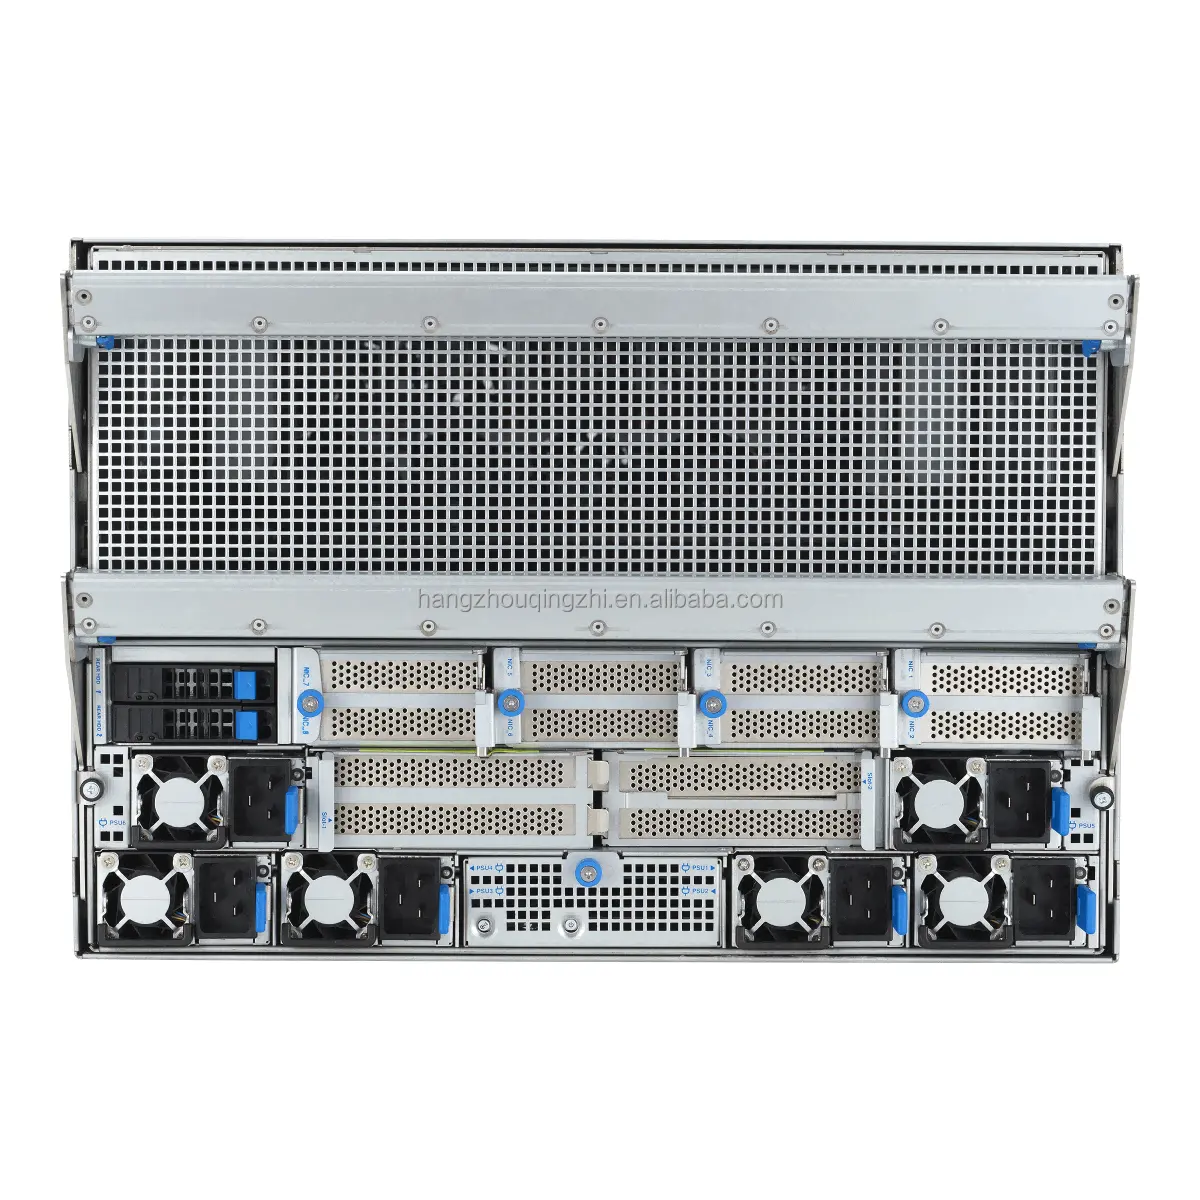 황새 도매 ESC N8-E11 7U HGX H100 8-GPU 서버 듀얼 4 세대 제온 확장 가능 프로세서 생성 AI에 맞게 설계